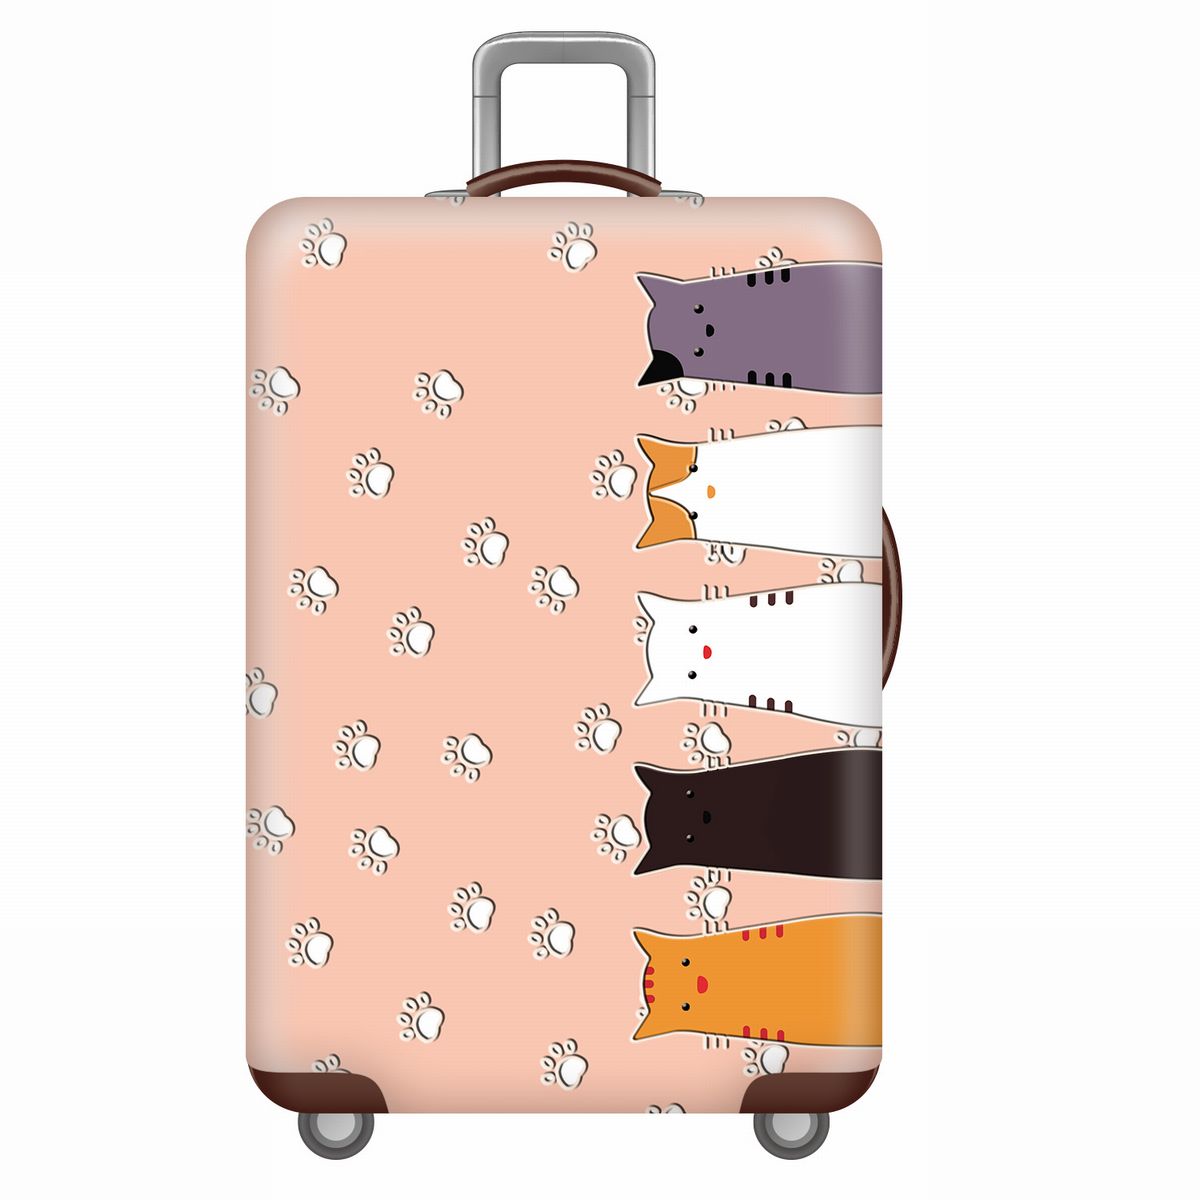 楽天市場 スーツケースカバー かわいい5匹の猫 肉球 イラスト プリント M 送料無料 モノッコ